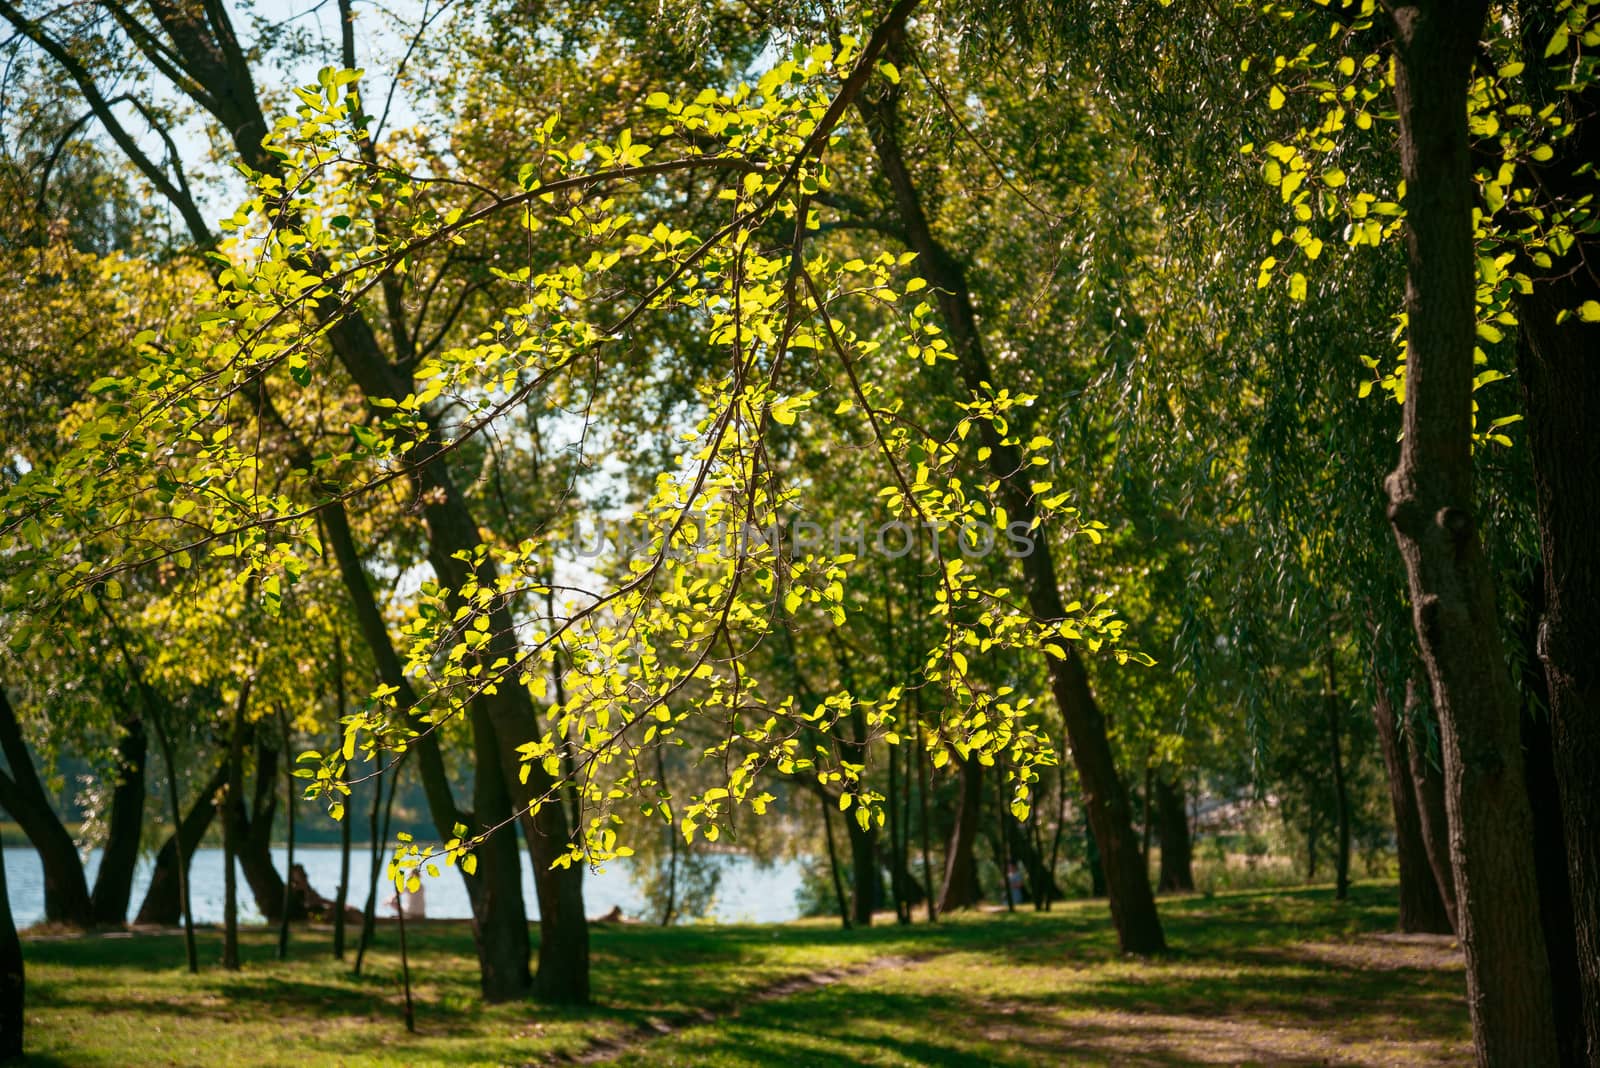 Poplar leaves in backlight, near the Dnieper River in Kiev by MaxalTamor